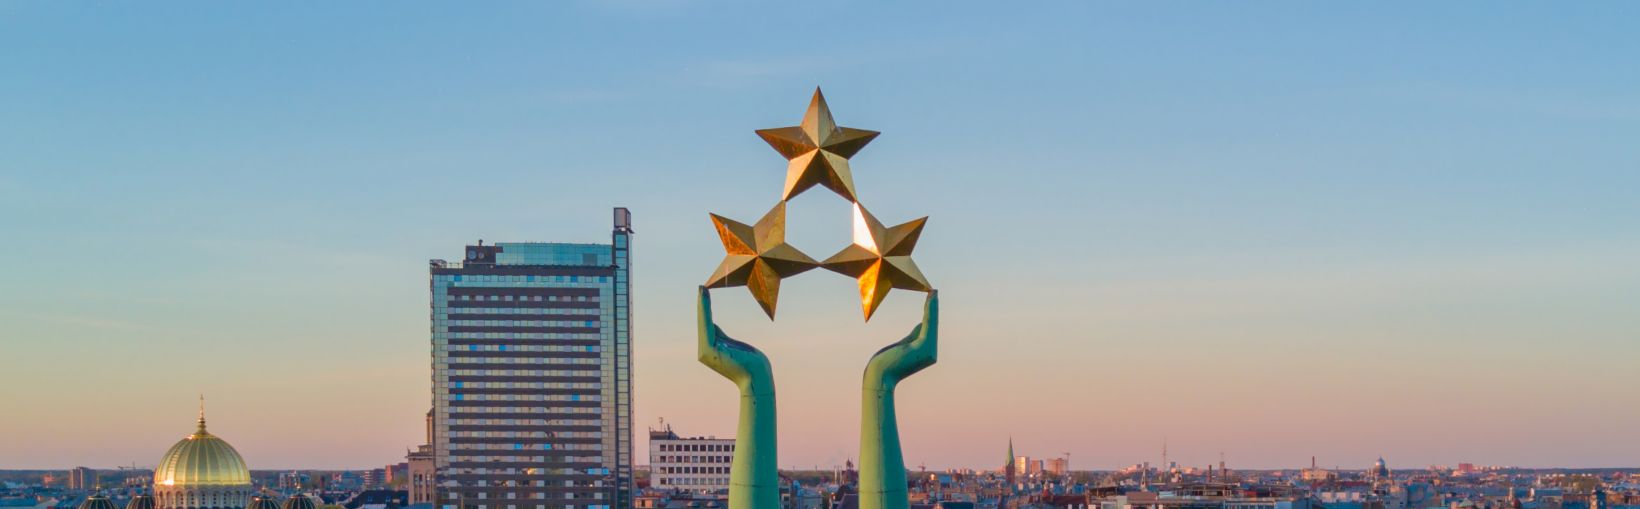 Nádherný pohled při západu slunce v Rize u sochy svobody zvané Milda. Svoboda v Lotyšsku. Socha svobody držící nad městem tři hvězdy.